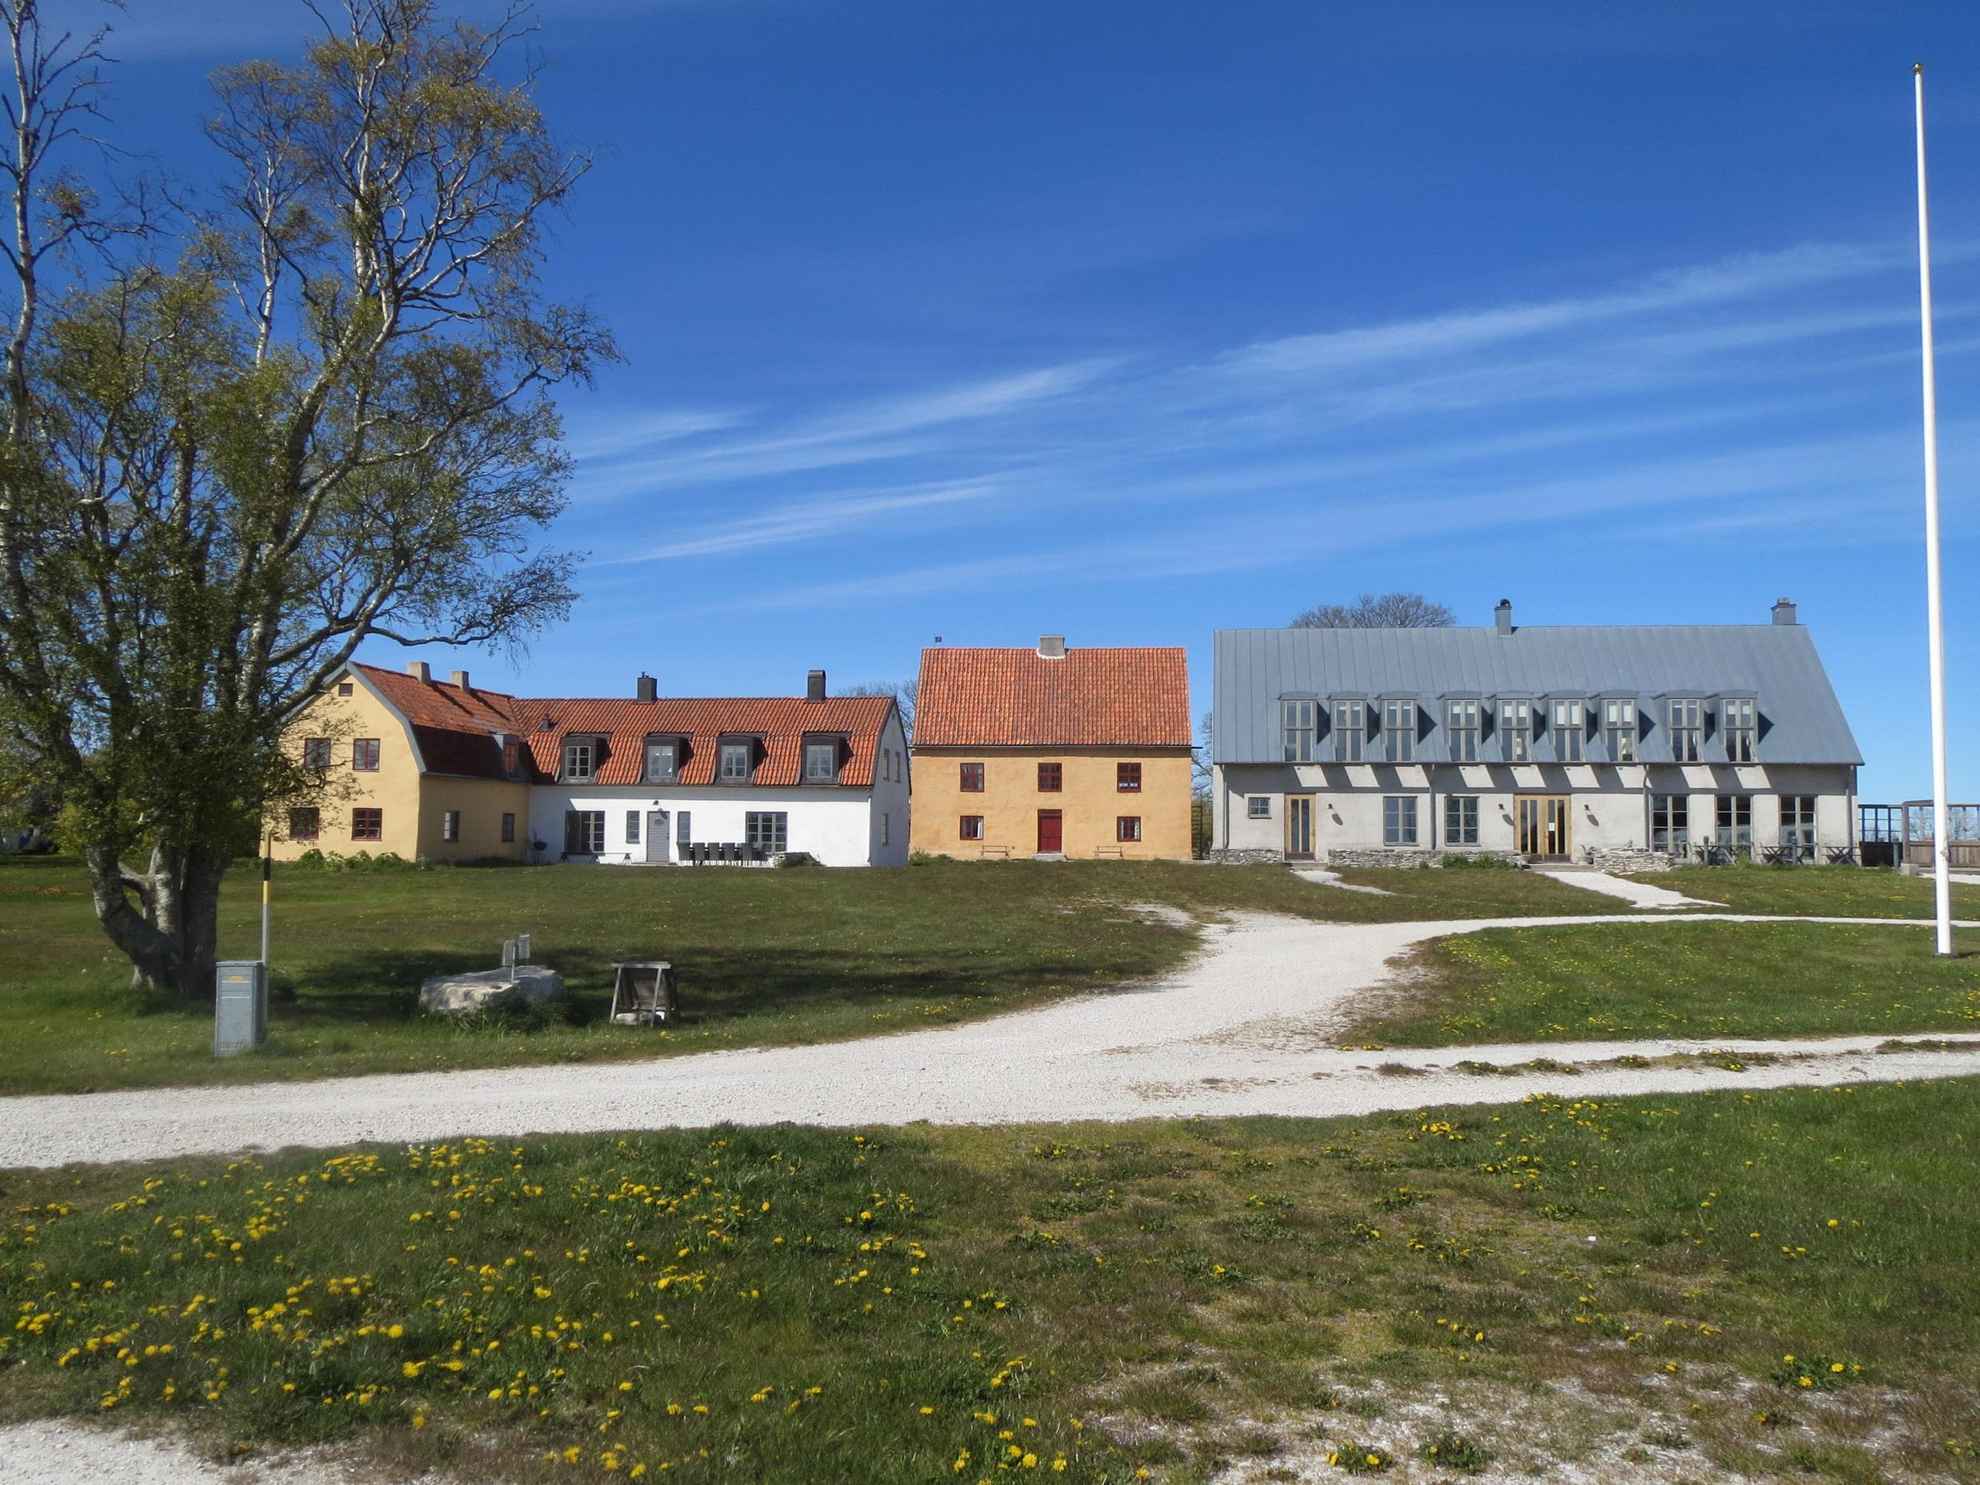 Häuser wie Stora Gåsemora stehen am Ende einer Schotterstraße